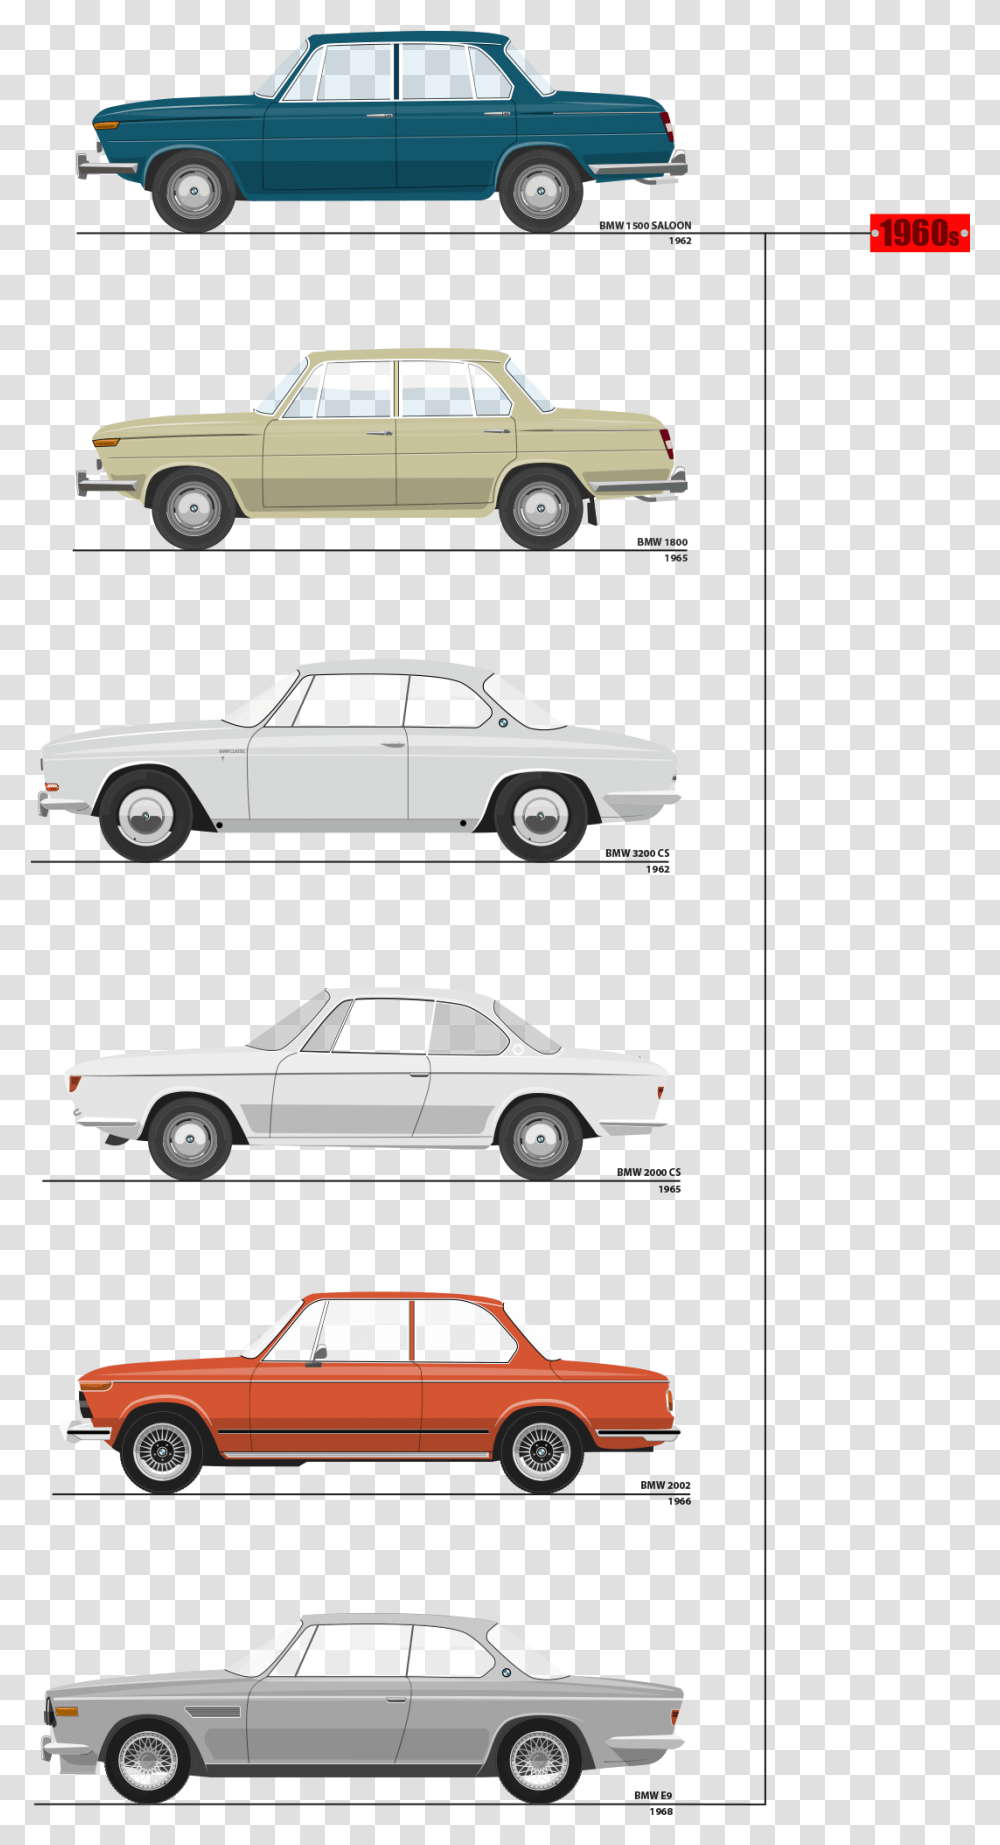 Bmw 1968 All Models, Sedan, Car, Vehicle, Transportation Transparent Png